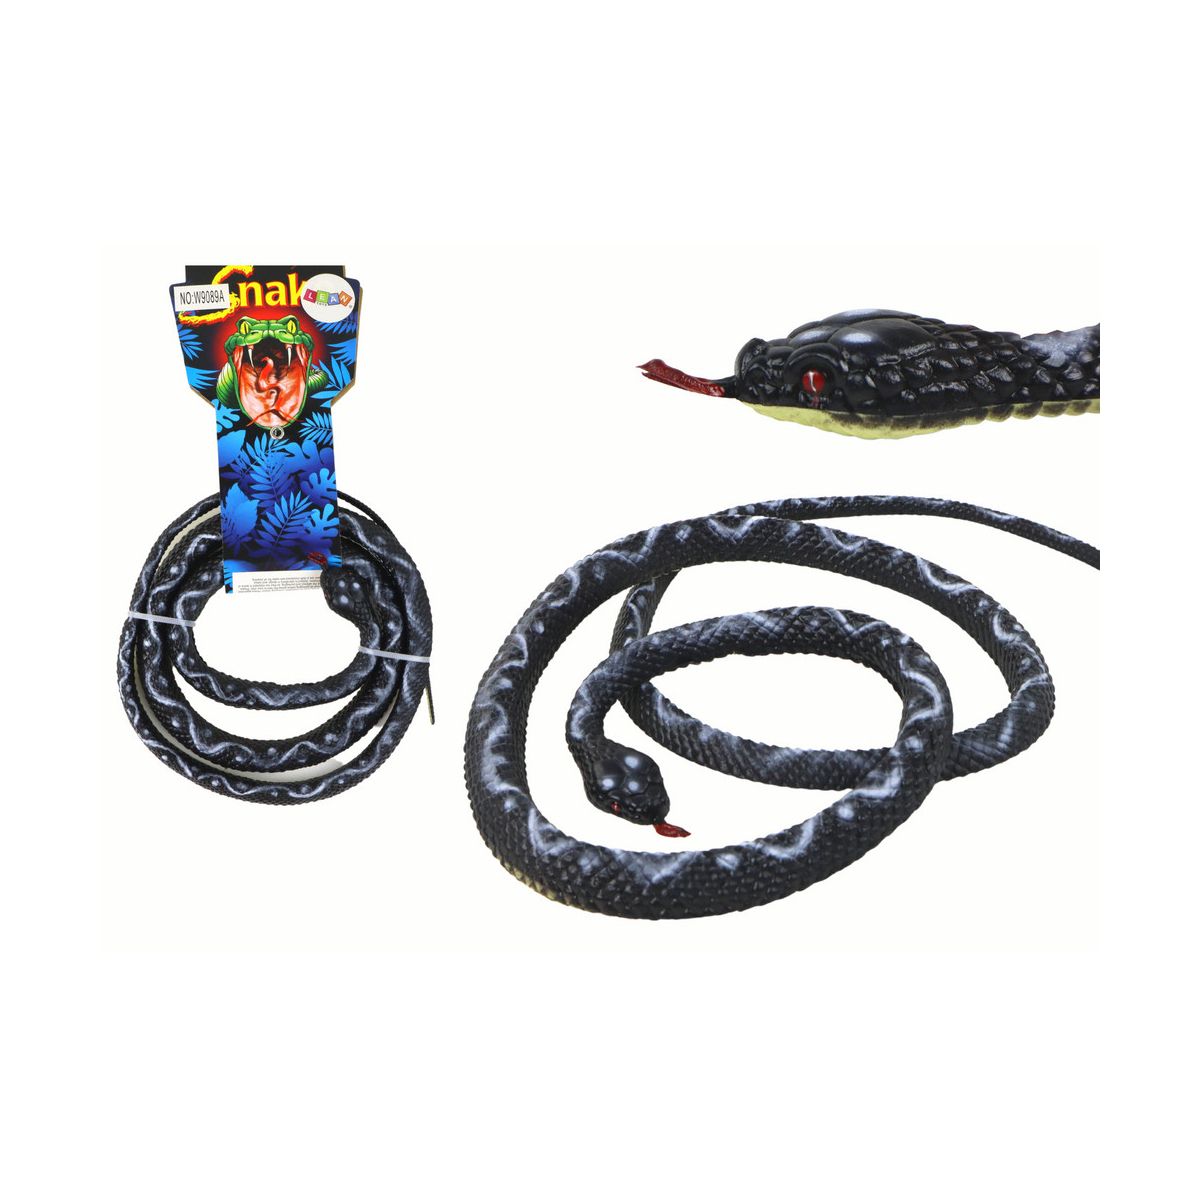 Figurka Lean Sztuczny Gumowy Wąż Koralowy Czarny PVC (16551)